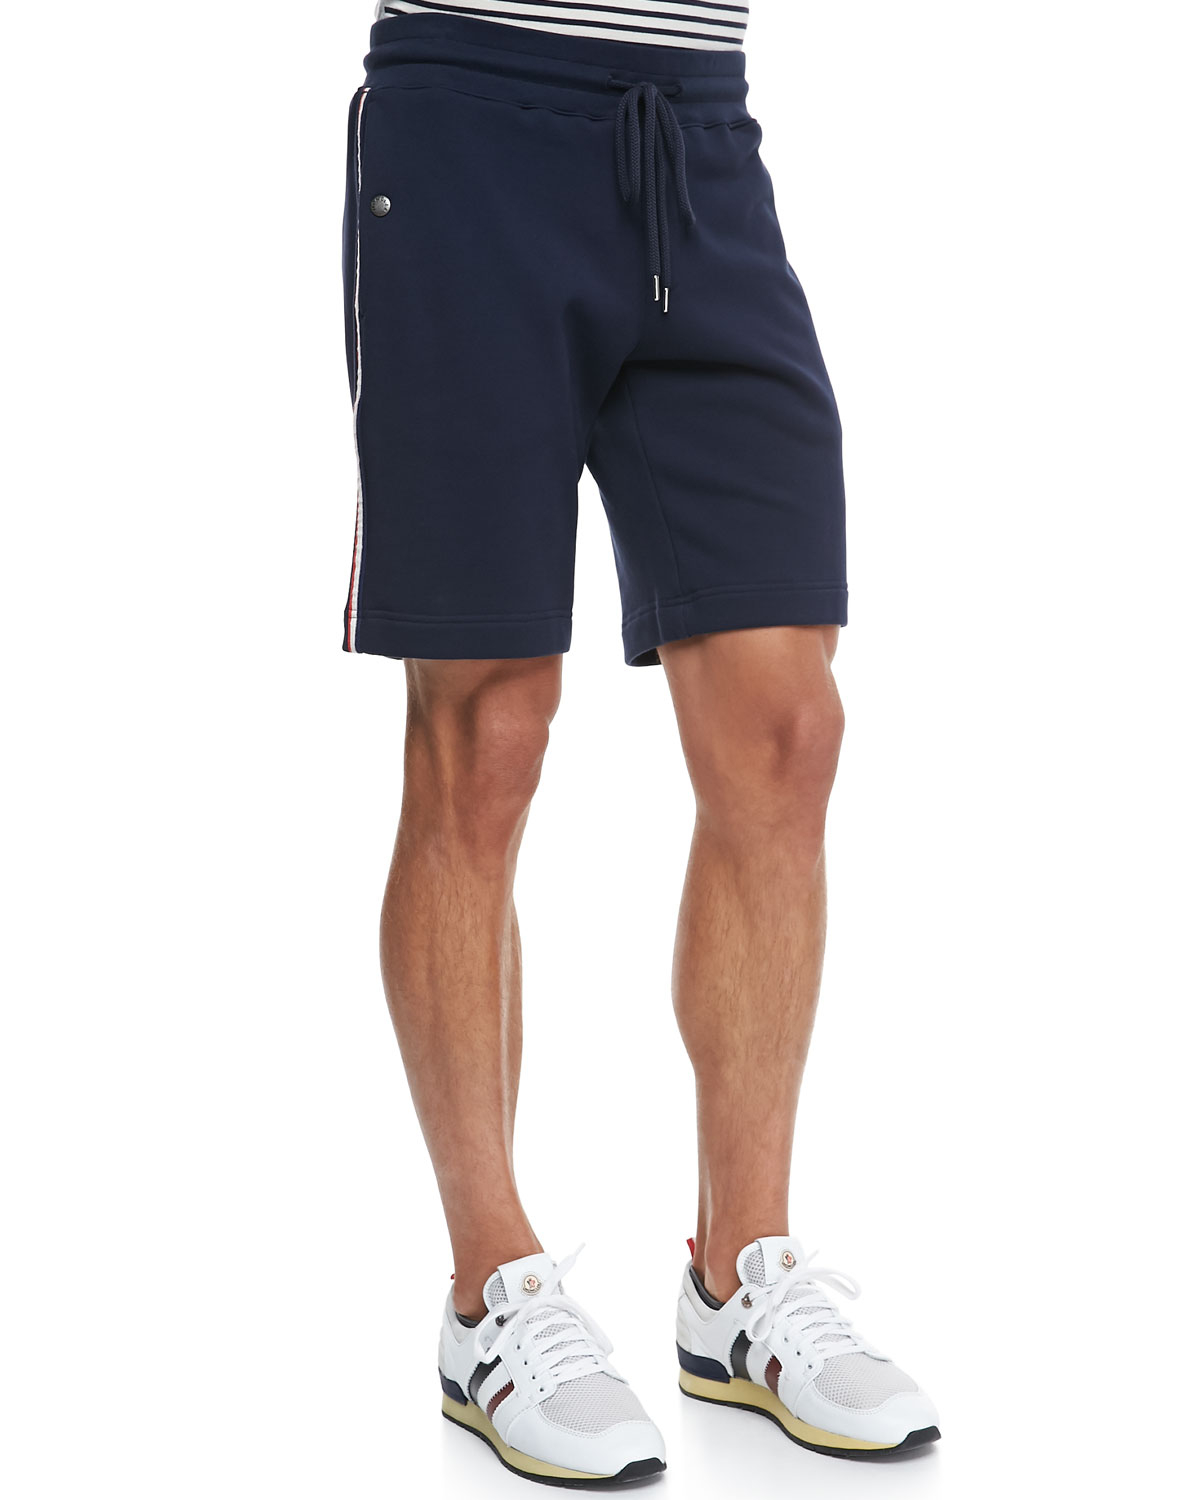 moncler shorts sale